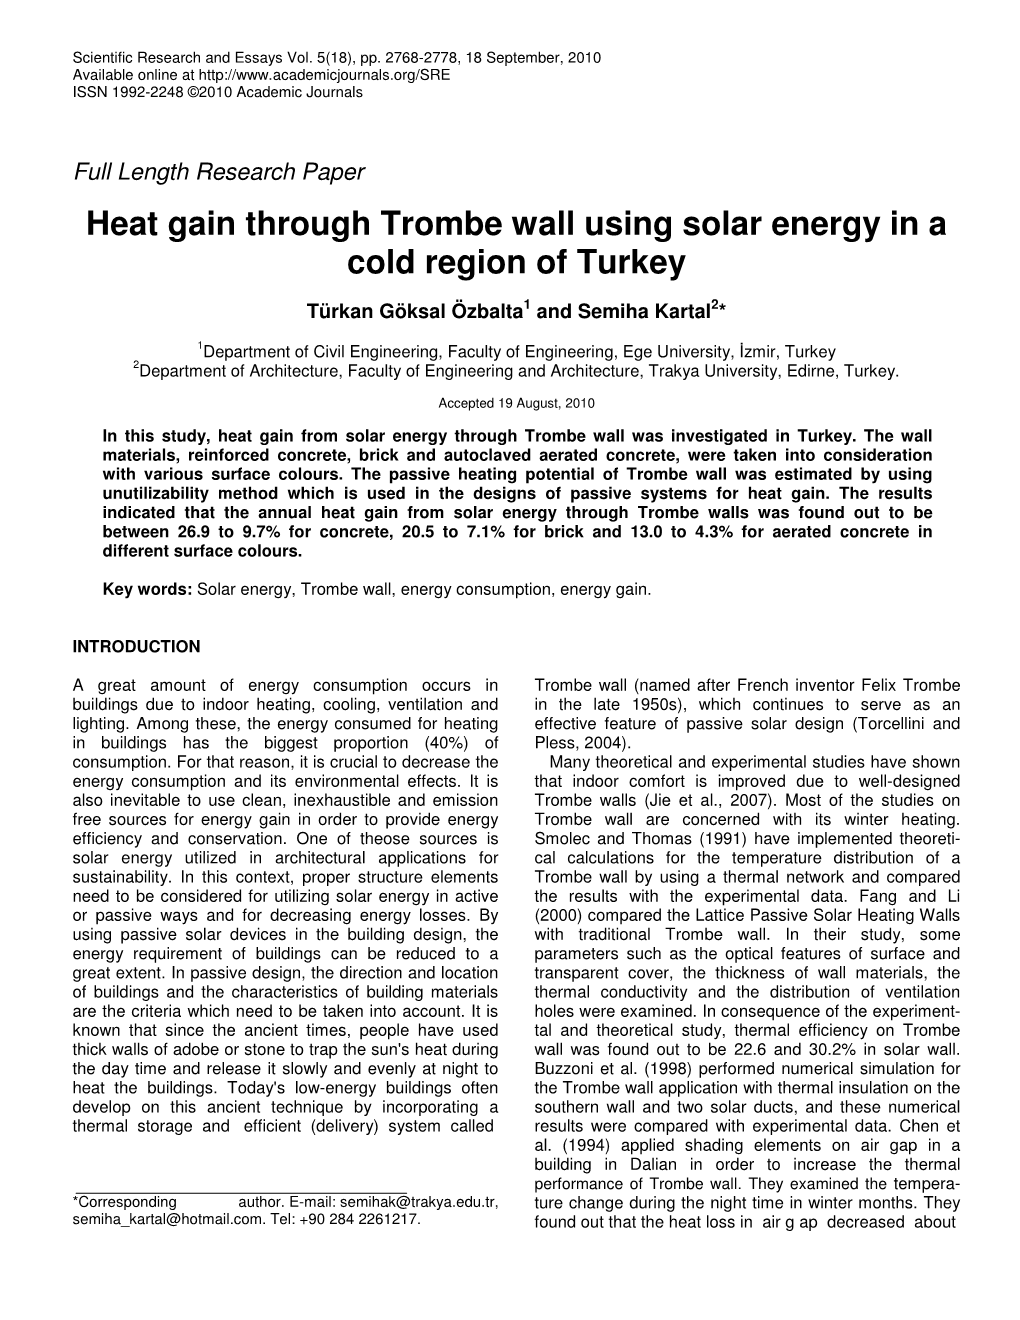 Heat Gain Through Trombe Wall Using Solar Energy in a Cold Region of Turkey